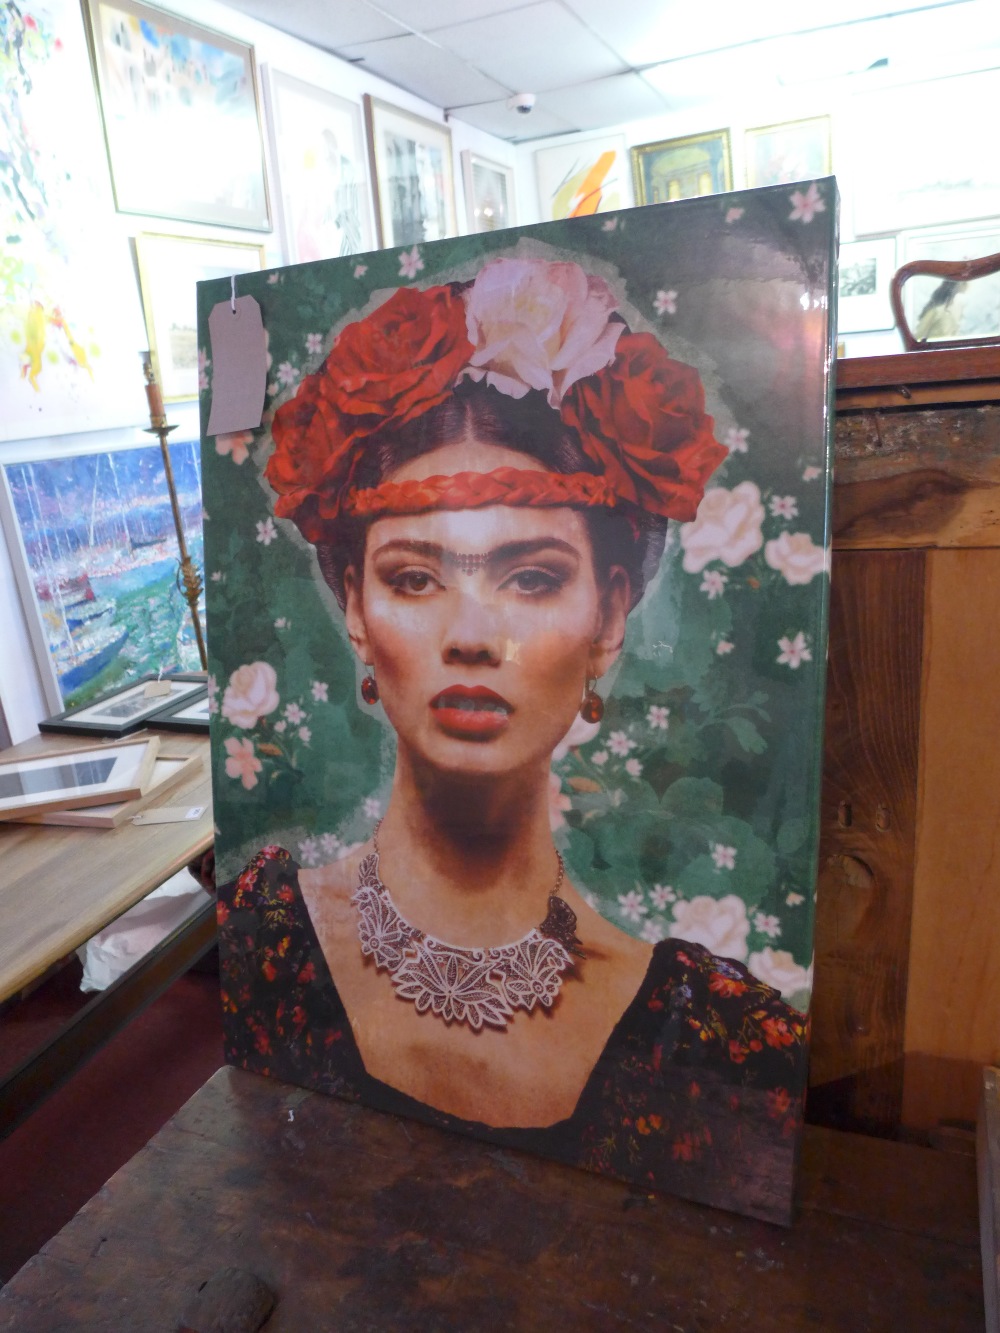 A contemporary print of Frida Kahlo